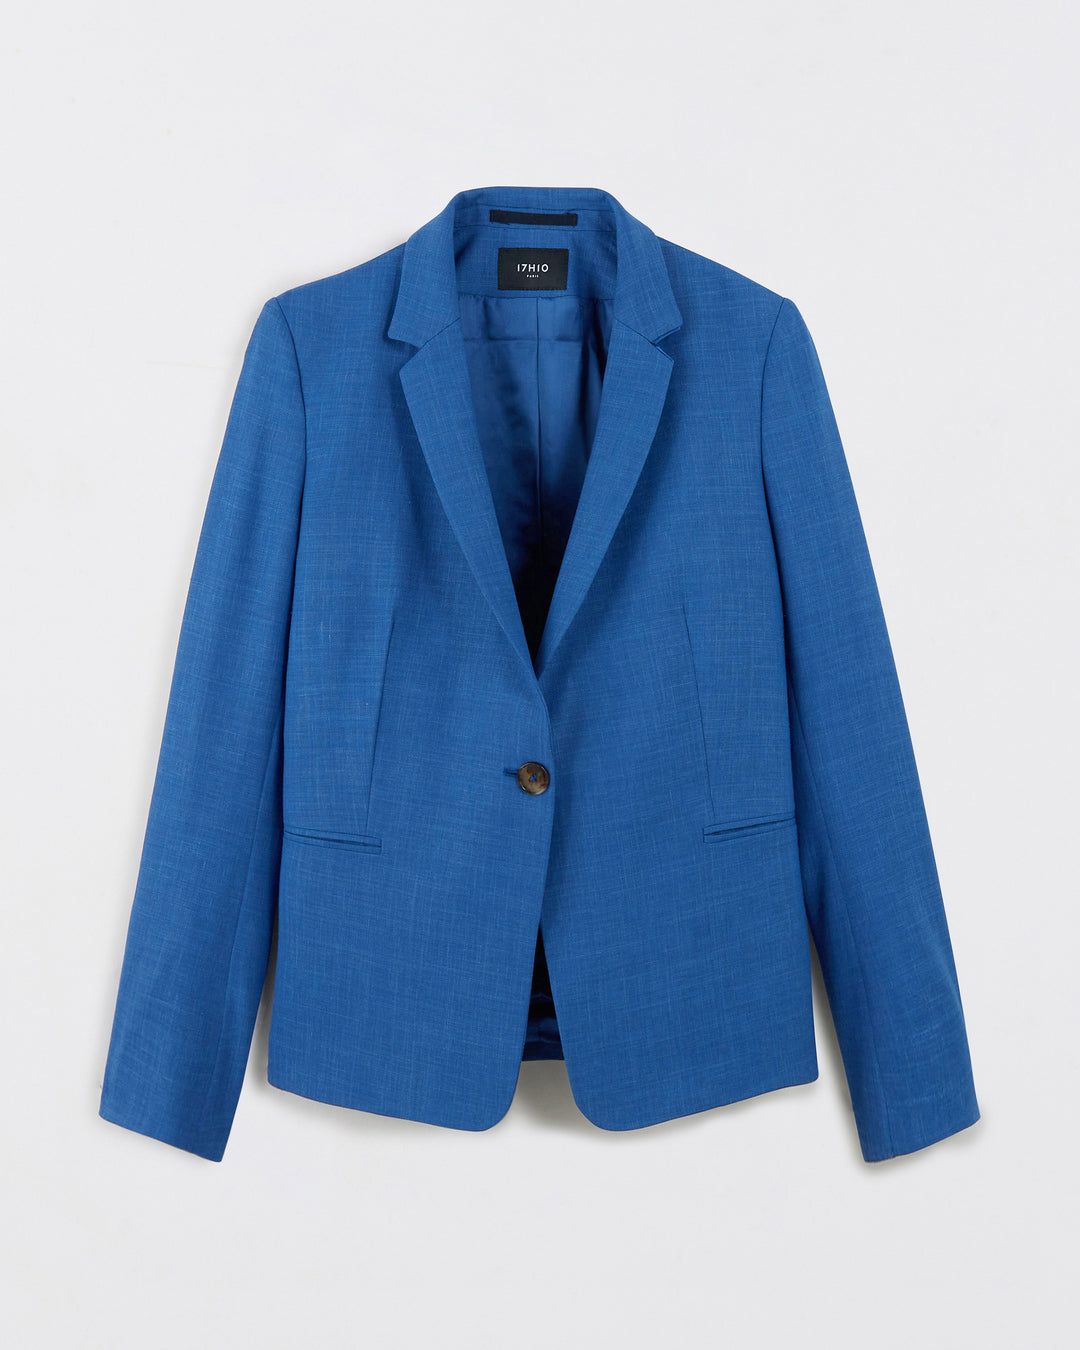 Paris suit jacket - Azure blue